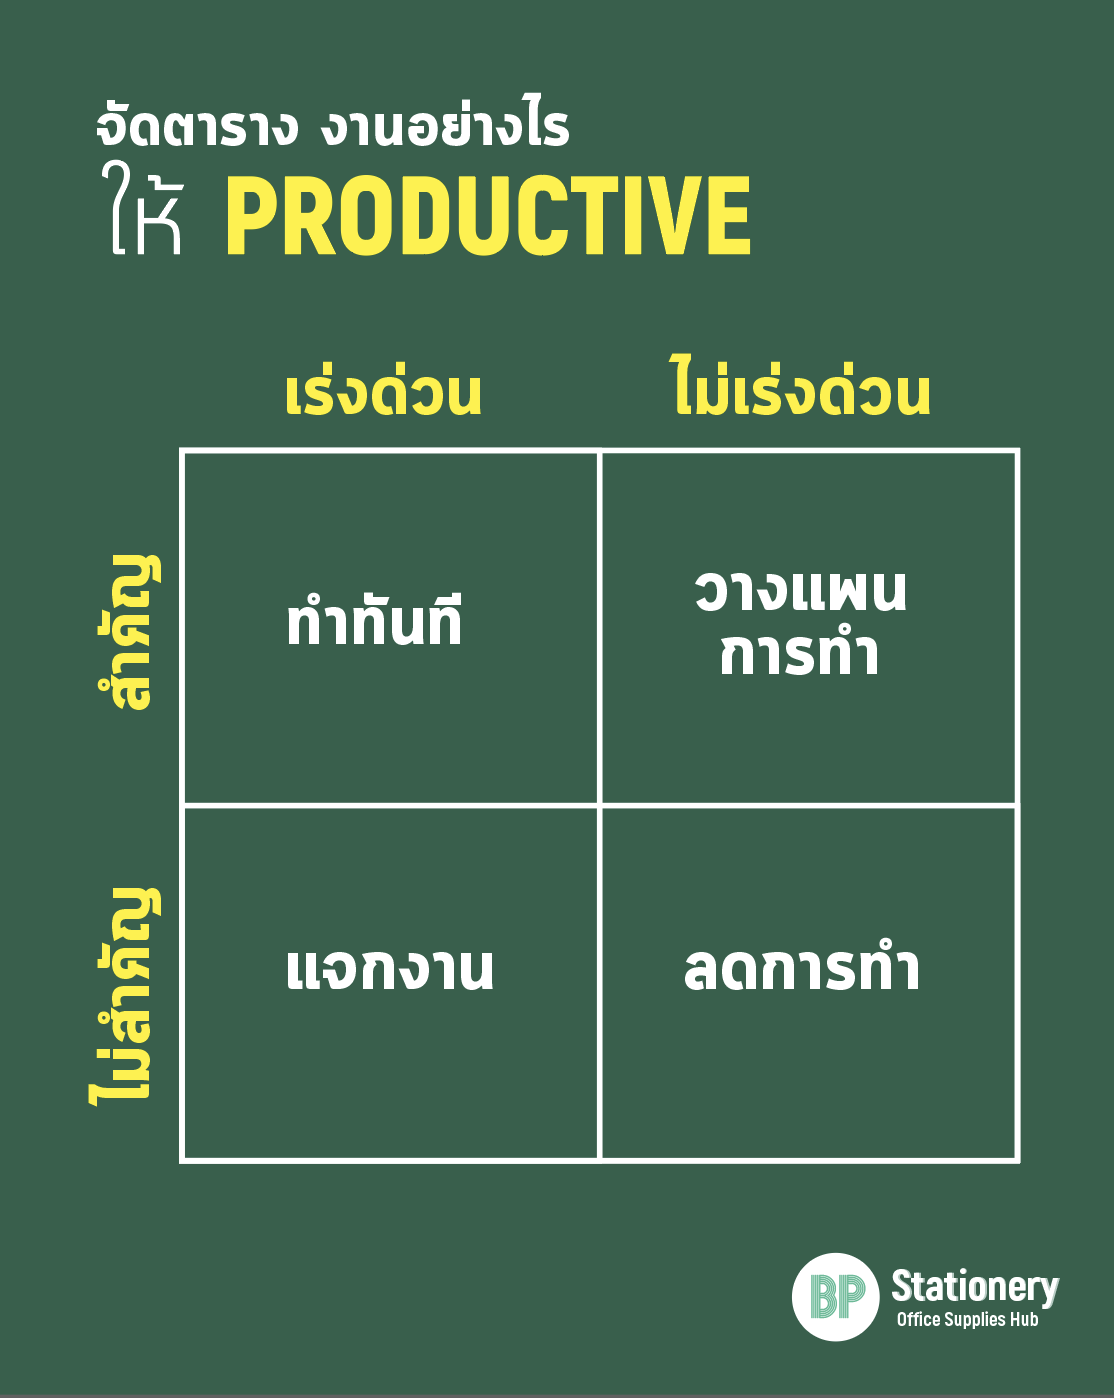 จัดตารางงานอย่างไร ให้ productive